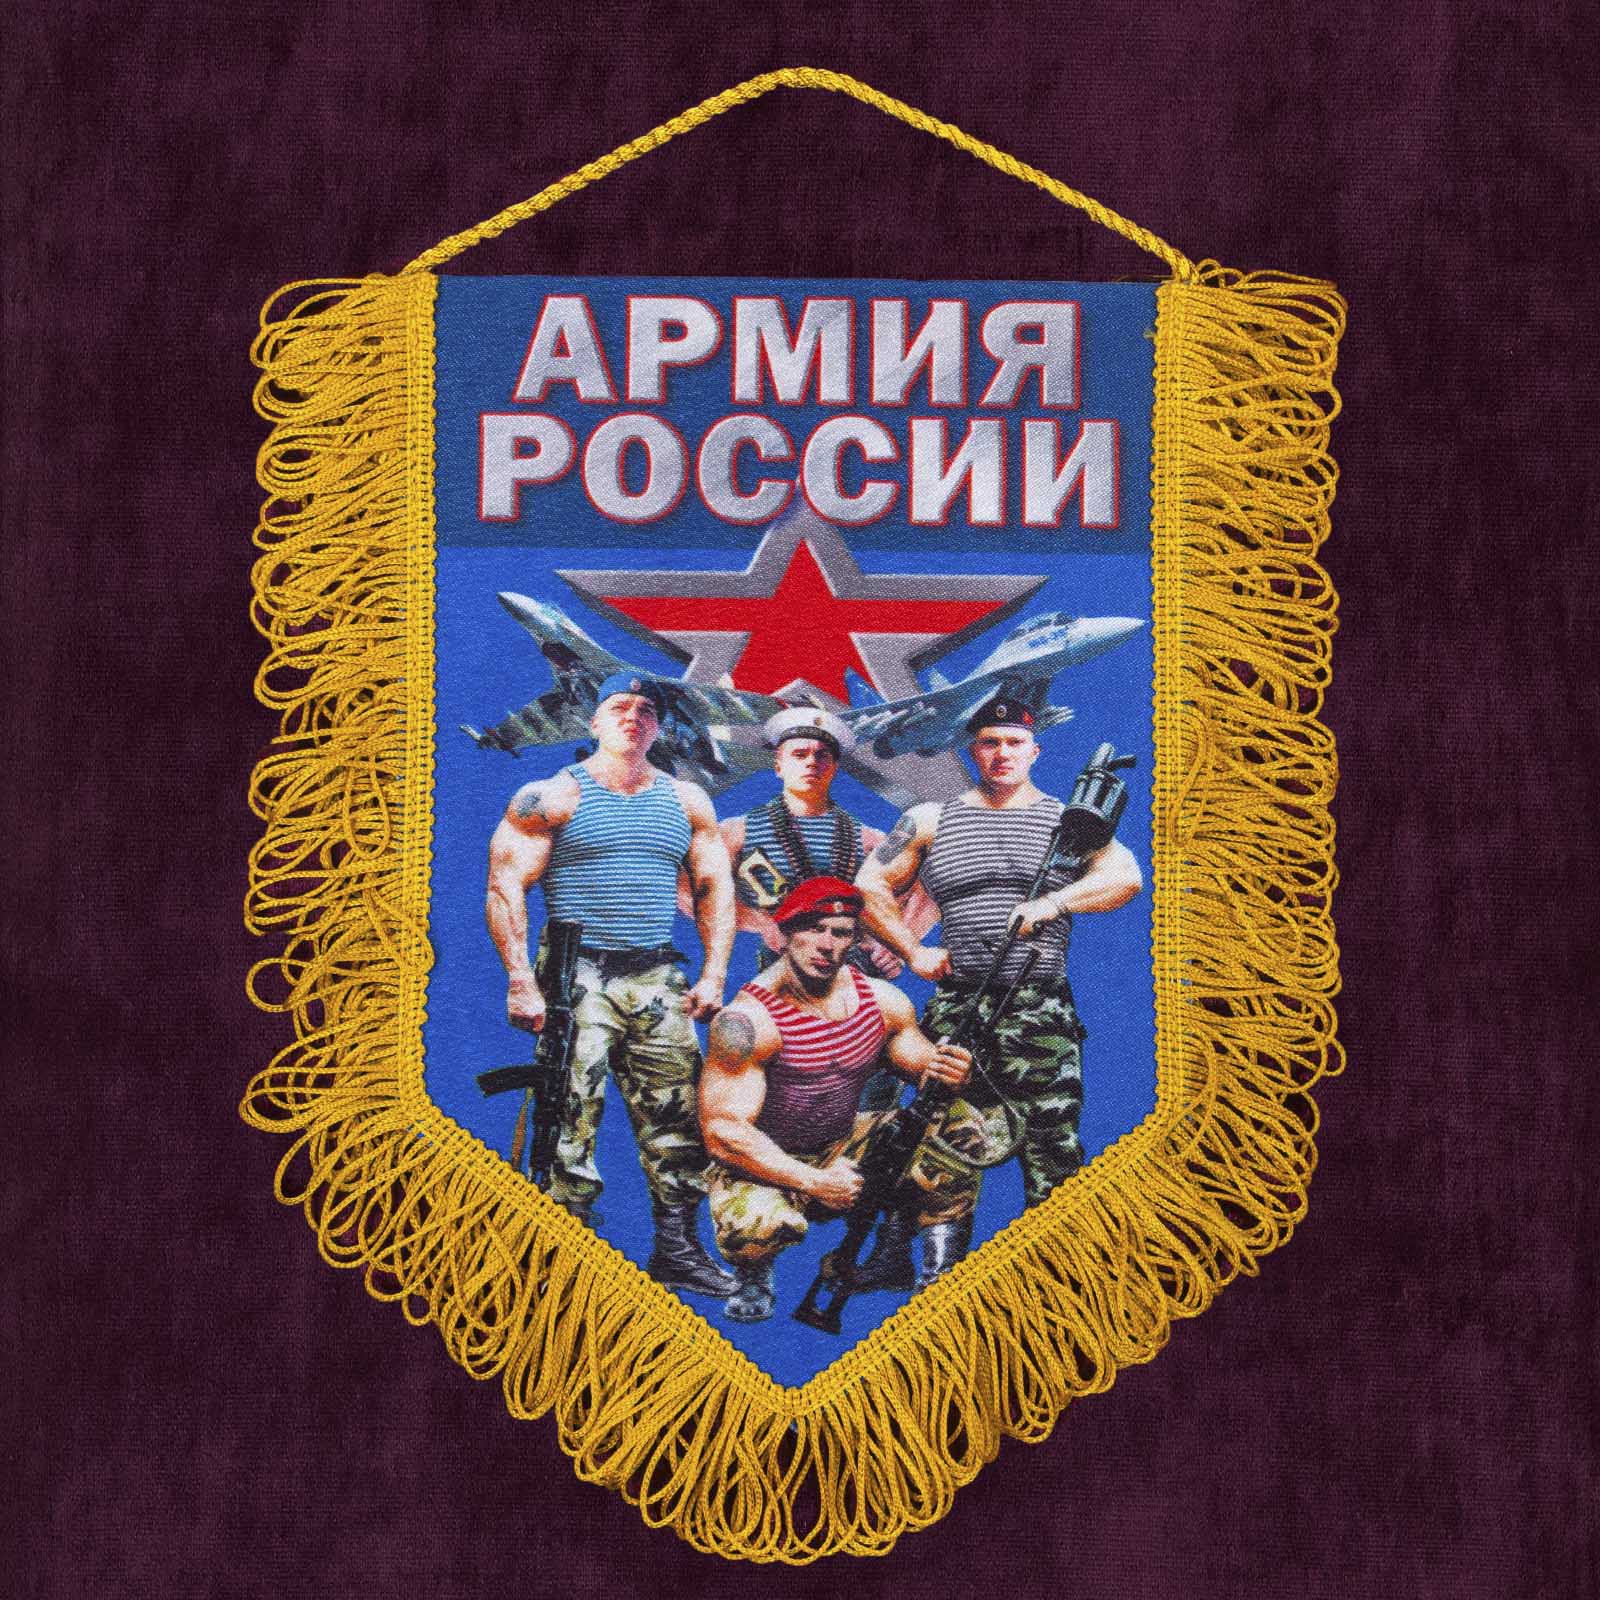 Купить памятный вымпел "Армия России" по низкой цене